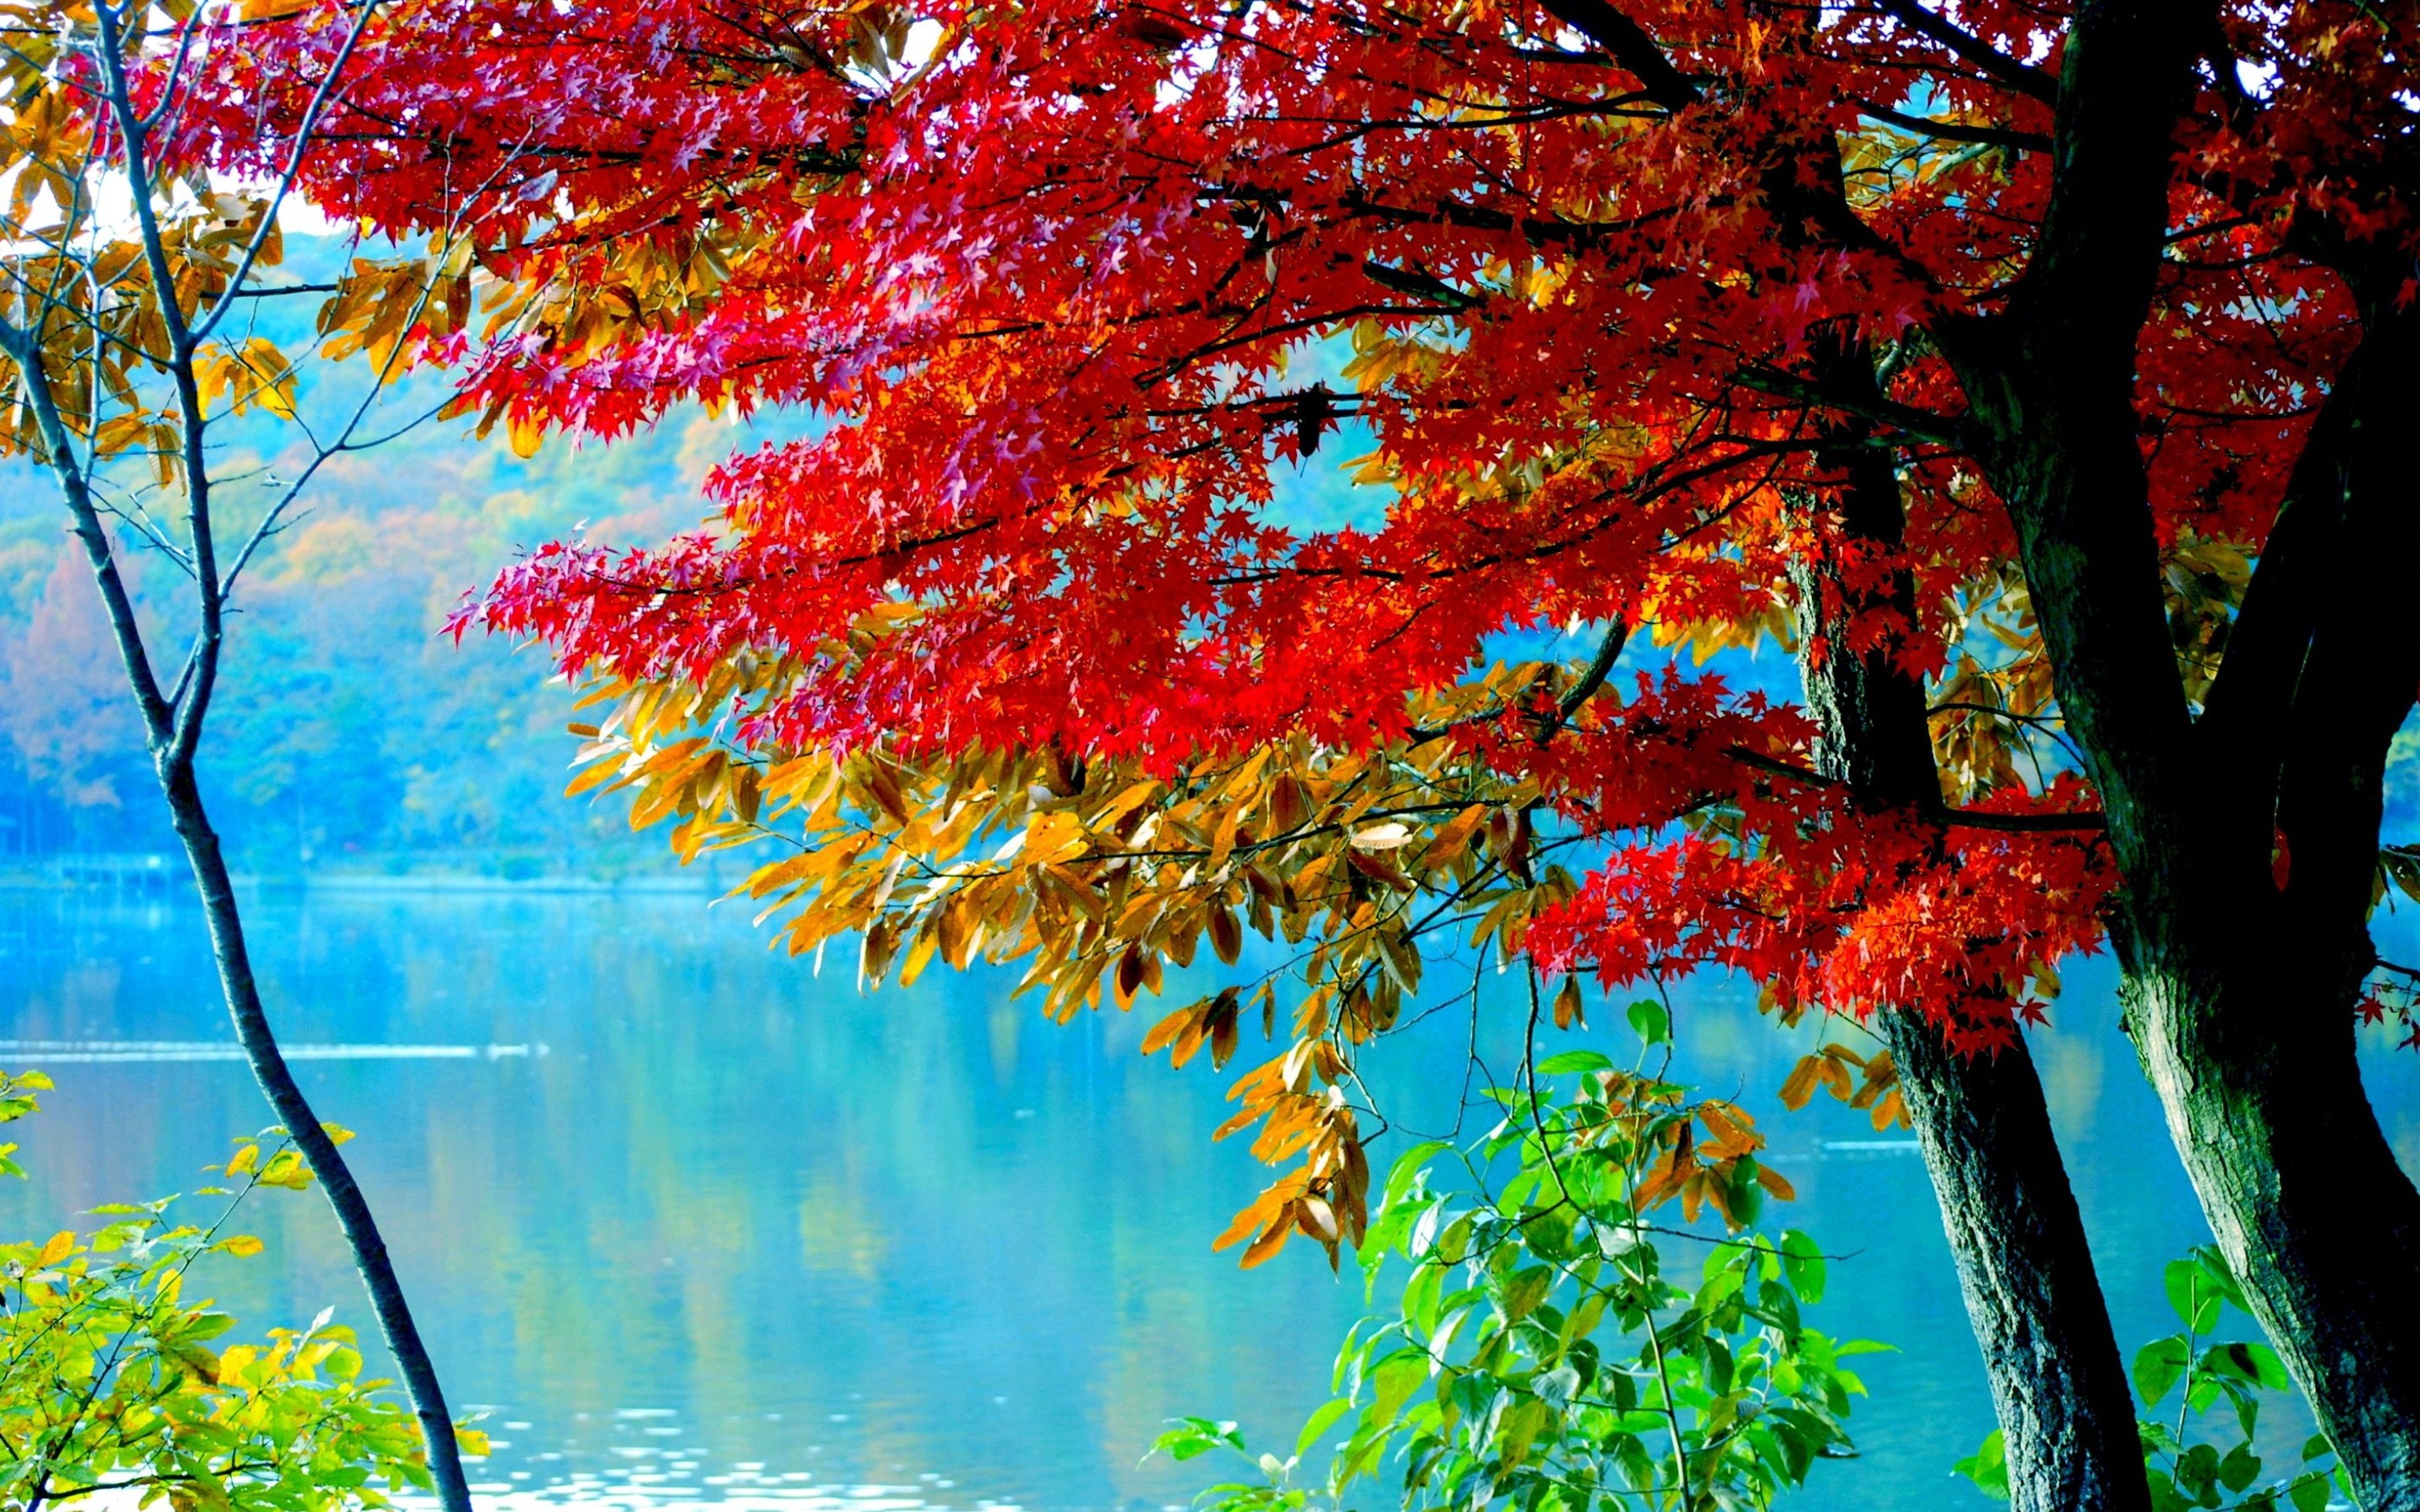 Скачать картинку Река, Осень, Дерево, Земля/природа в телефон бесплатно.